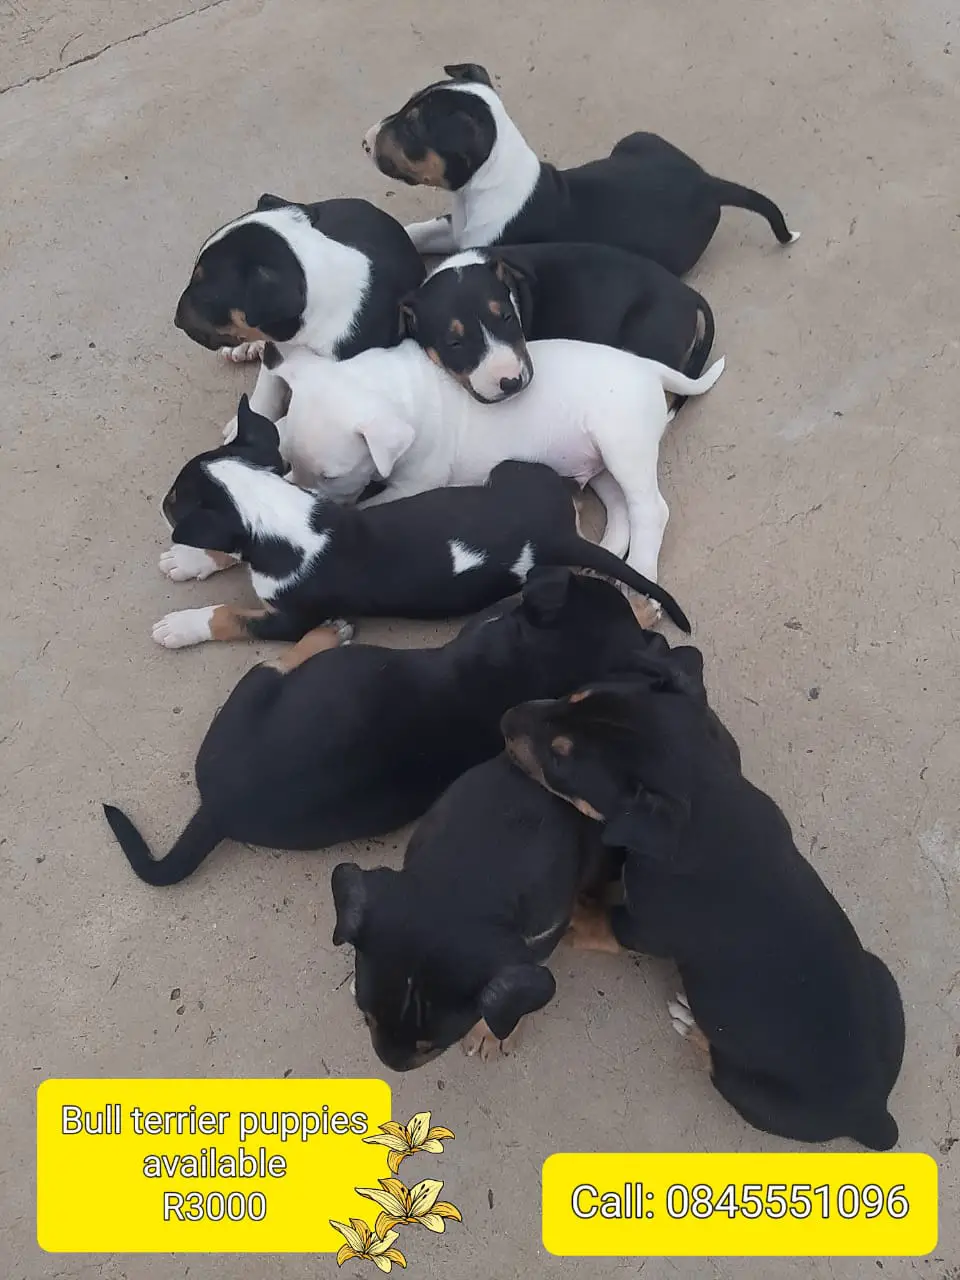 Bull Terrier Puppies in Bloemfontein (29/12/2022)